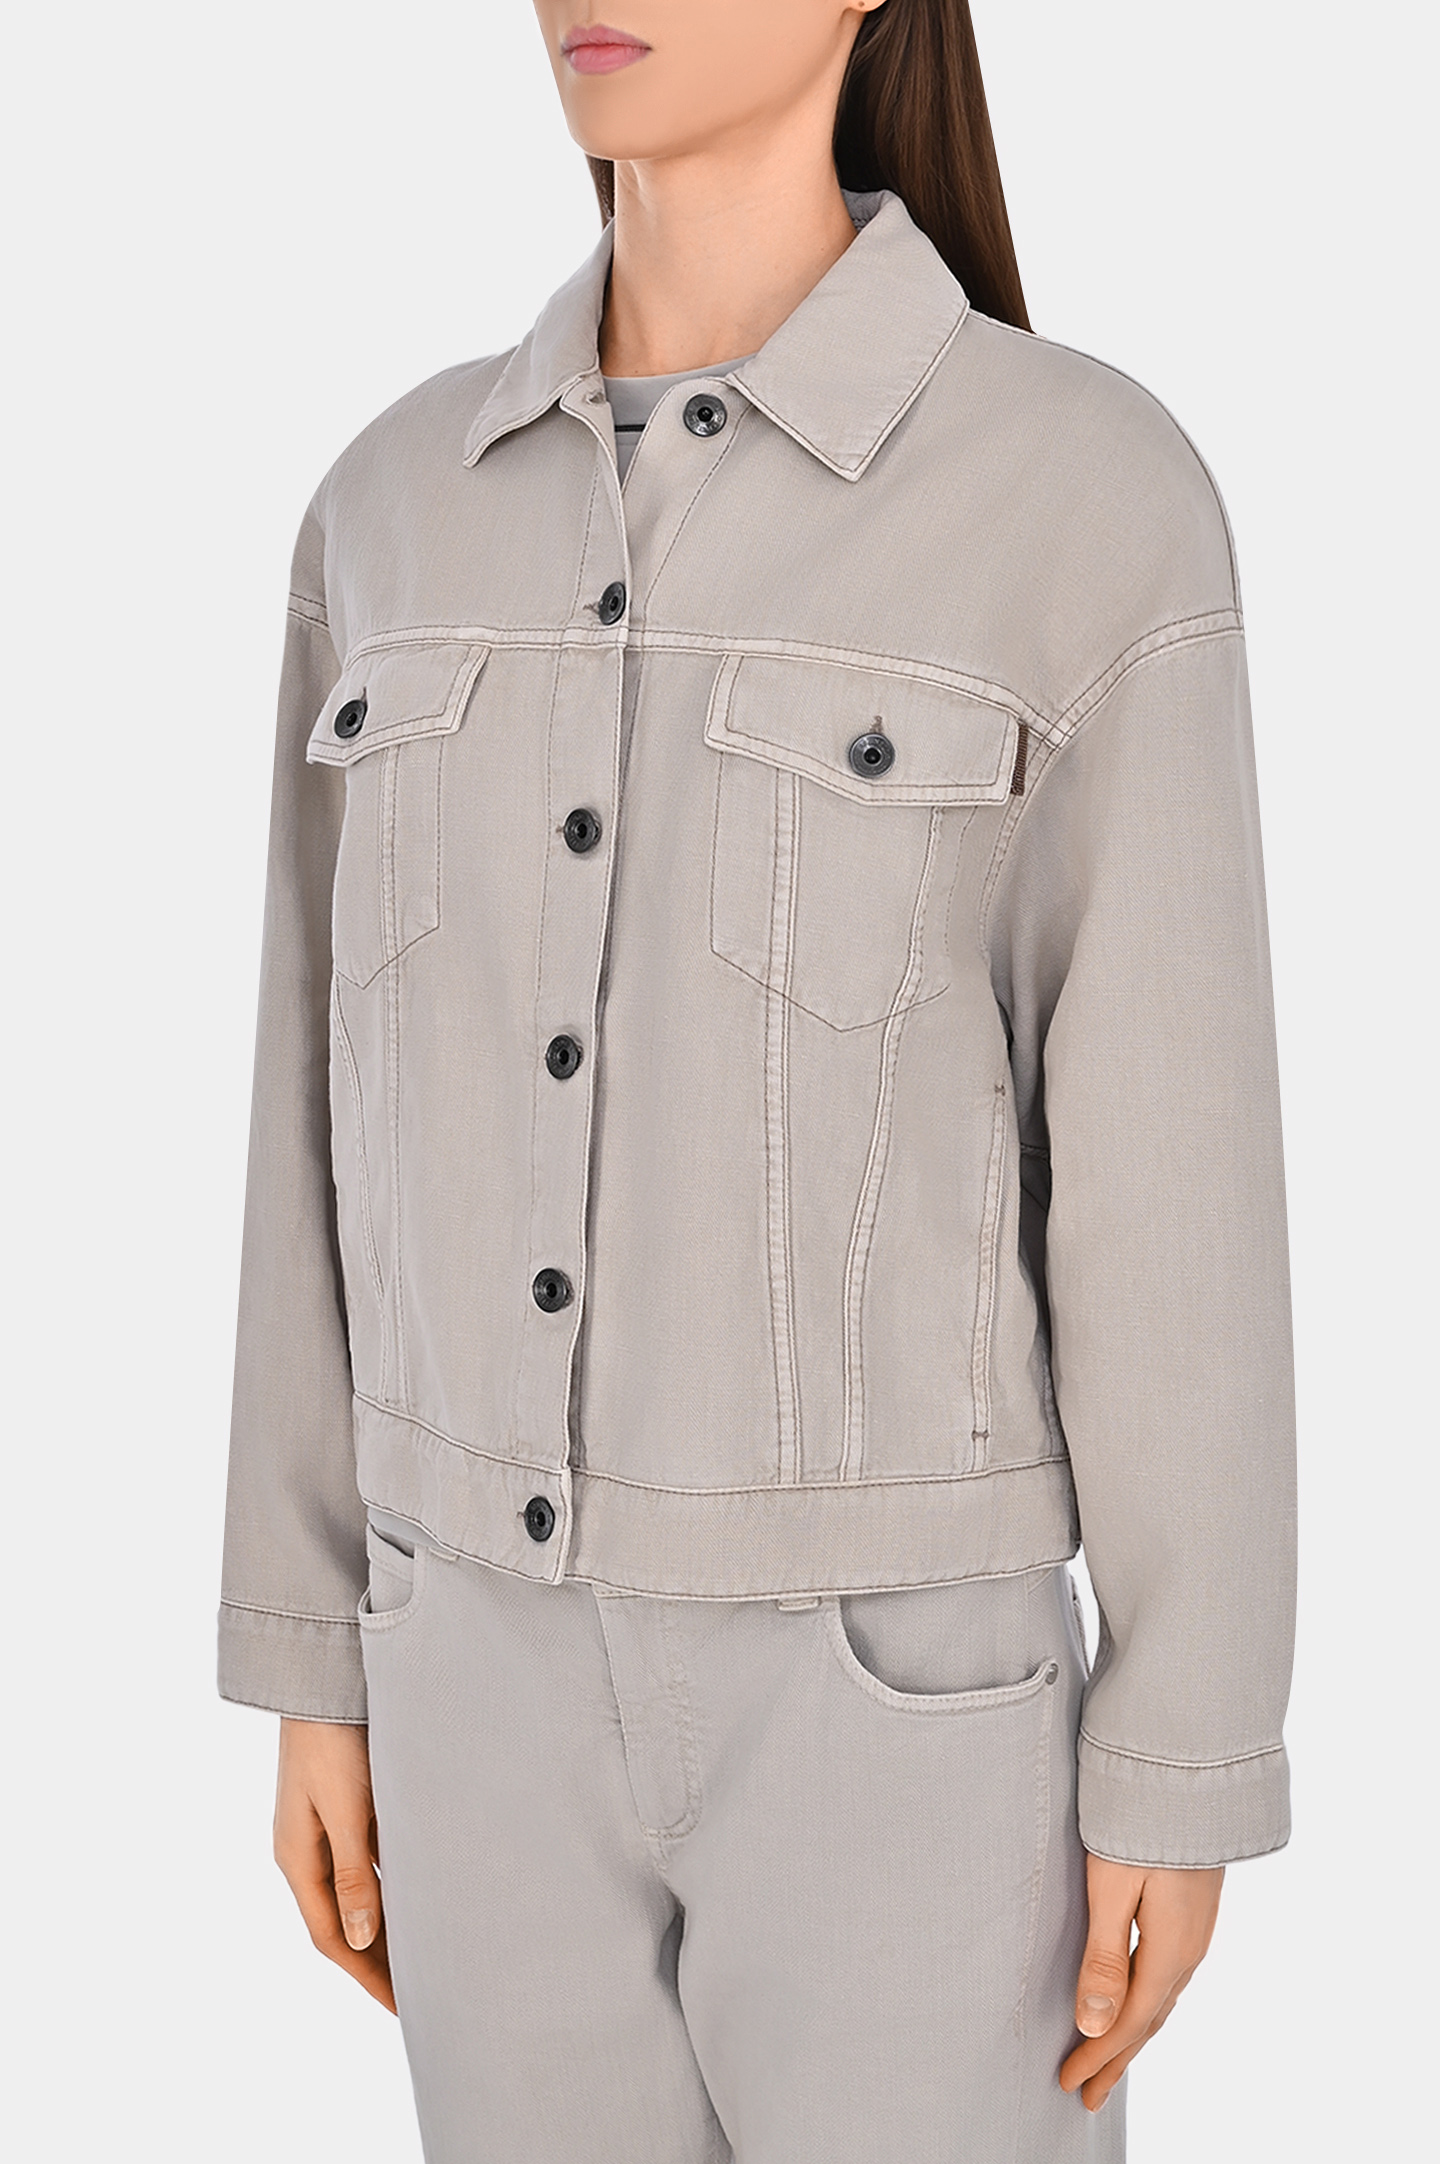 Джинсовая куртка с карманами BRUNELLO  CUCINELLI ML9962994, цвет: Светло-бежевый, Женский